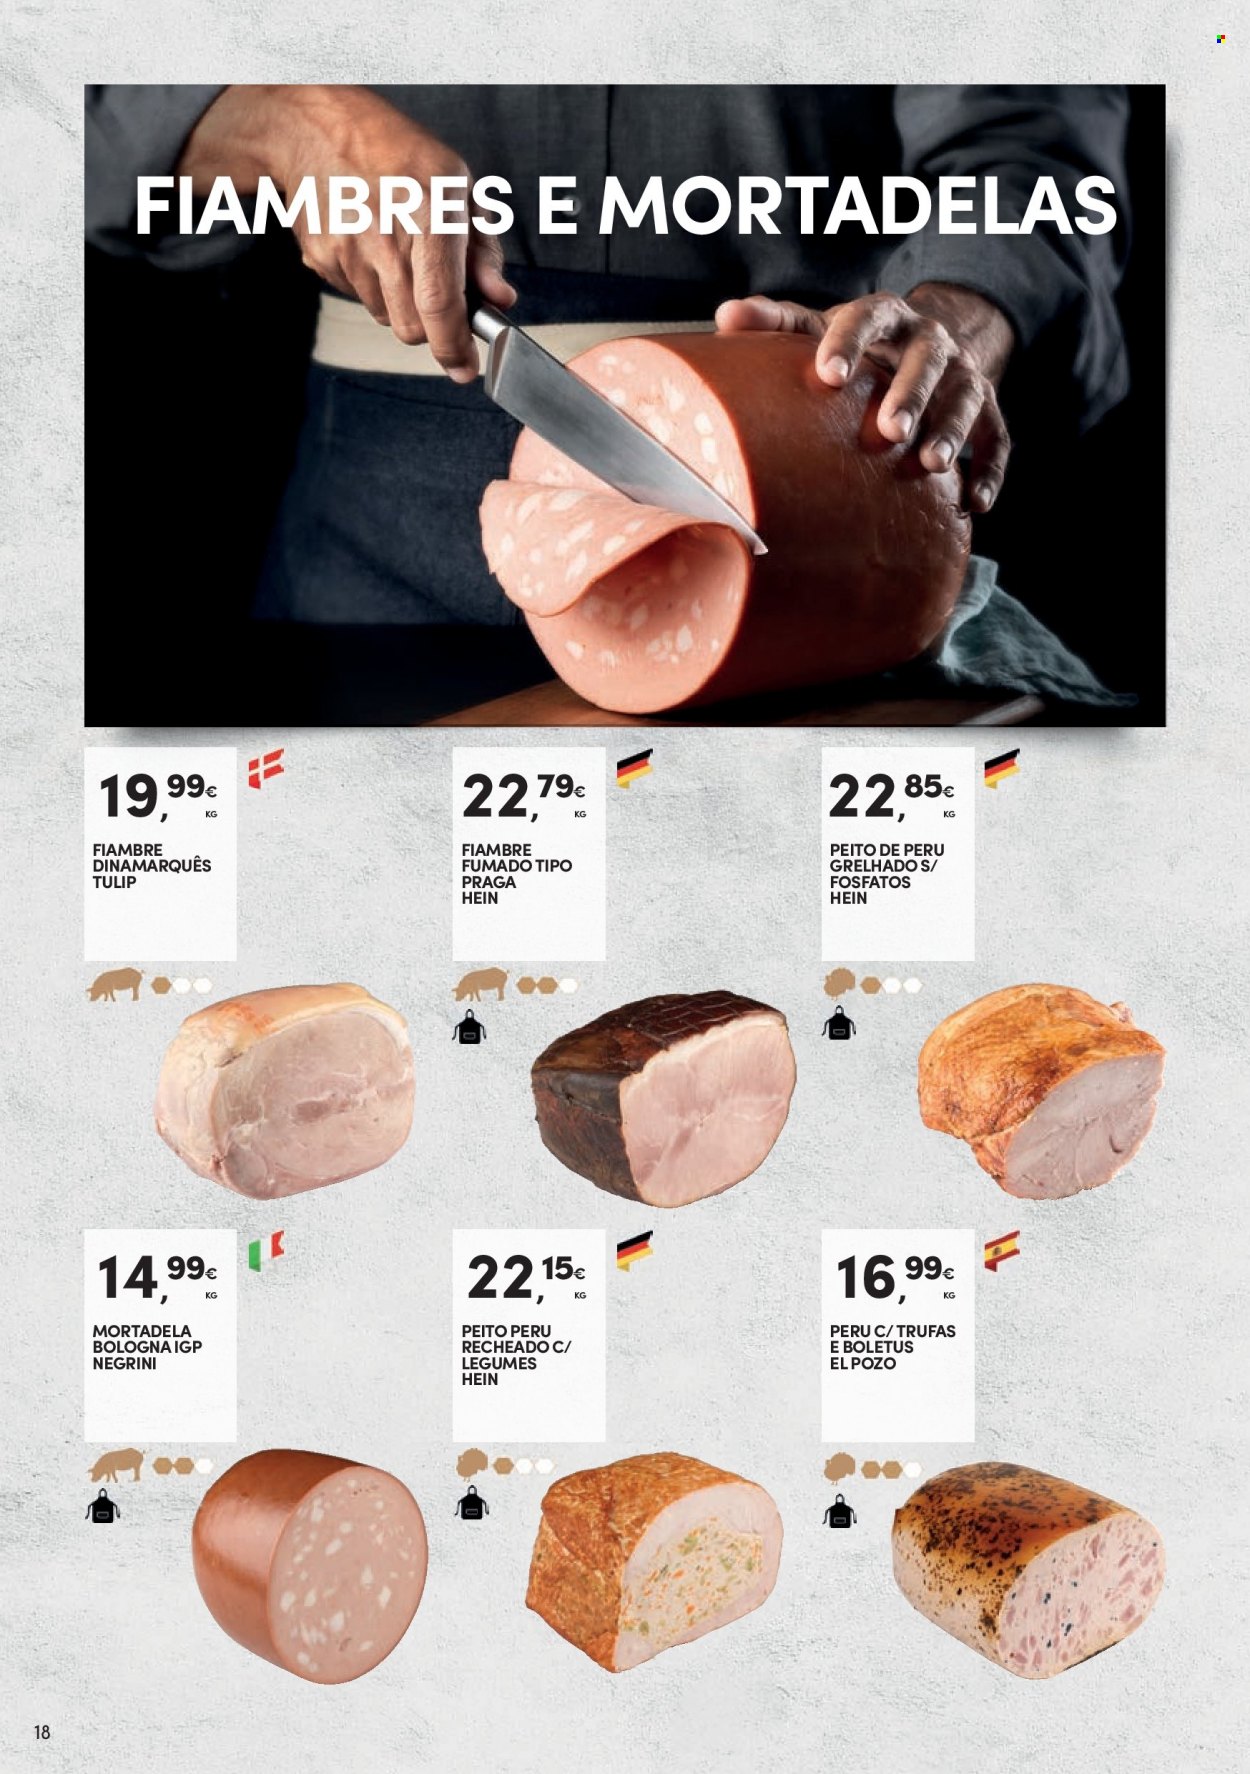 thumbnail - Folheto Continente - 19.7.2022 - 28.8.2022 - Produtos em promoção - legumes, peito de peru, perú, mortadela, fiambre, trufas. Página 18.